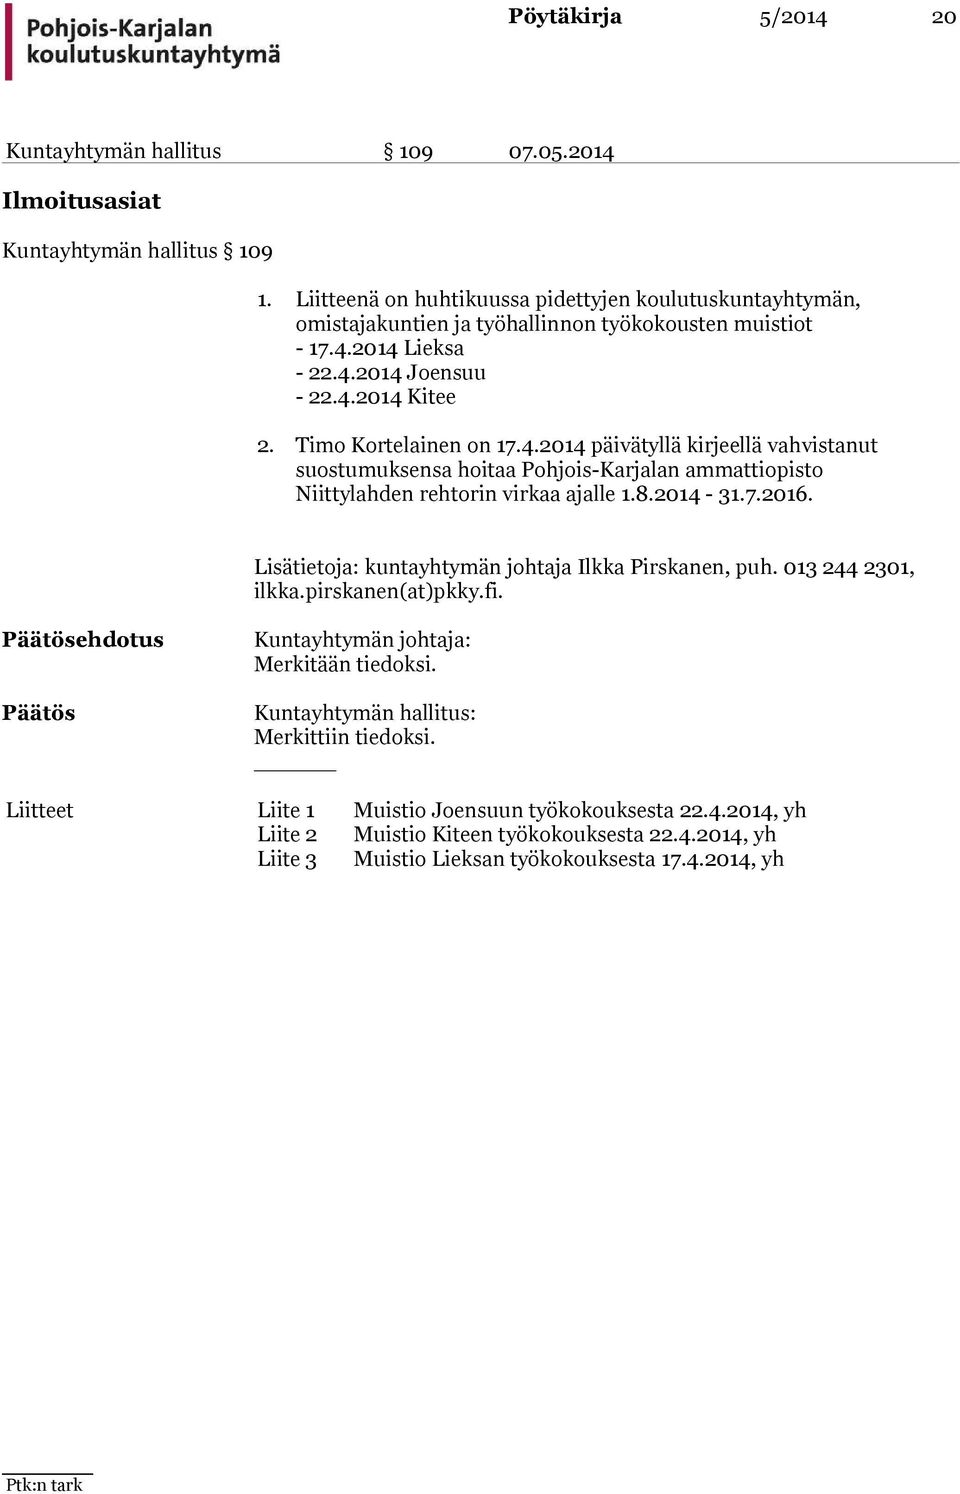 Timo Kortelainen on 17.4.2014 päivätyllä kirjeellä vahvistanut suostumuksensa hoitaa Pohjois-Karjalan ammattiopisto Niittylahden rehtorin virkaa ajalle 1.8.2014-31.7.2016.